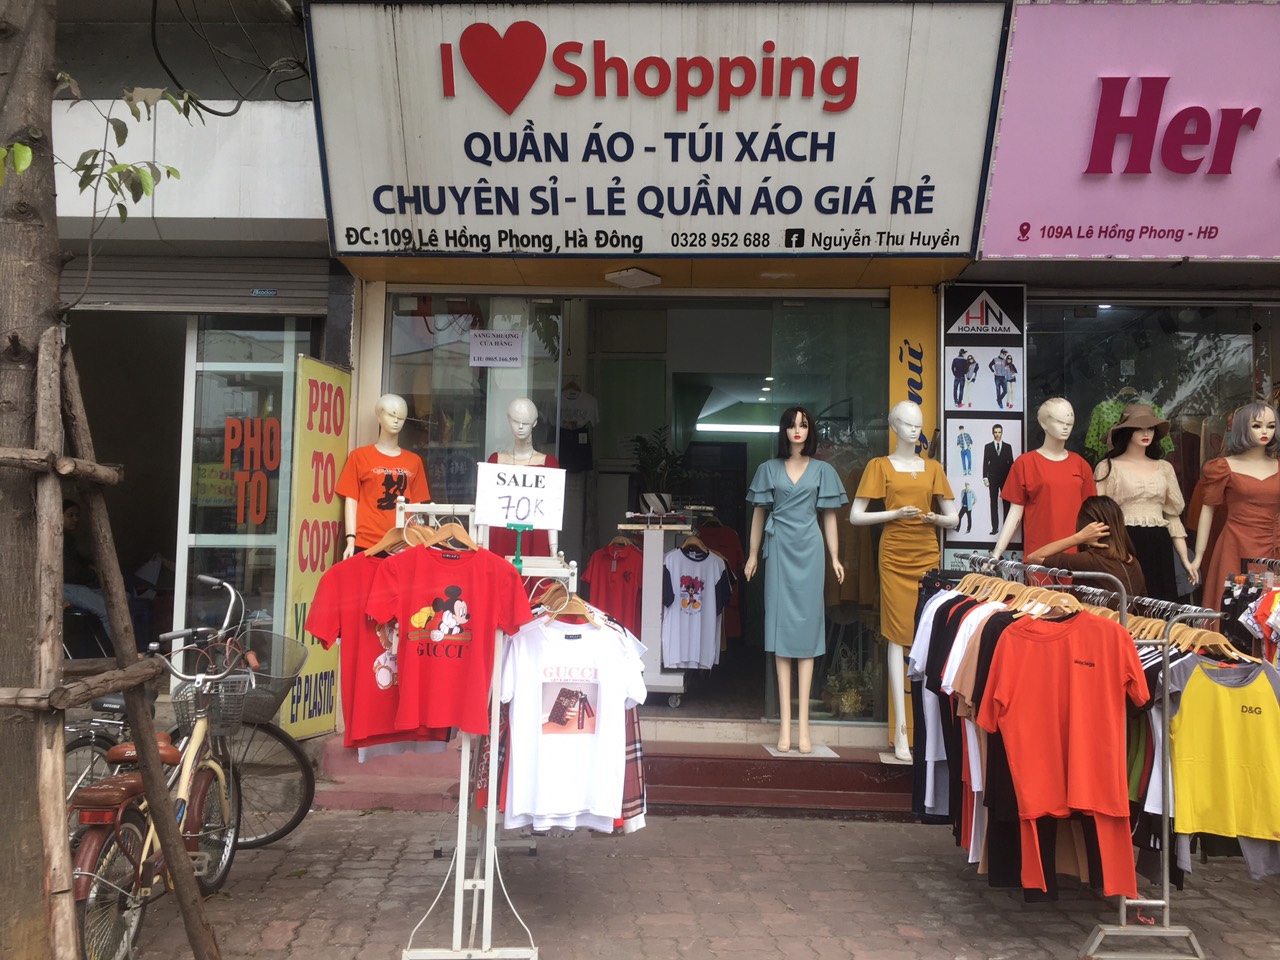 Sang nhượng cửa hàng thời trang nữ mặt phố 109A Lê Hồng Phong, Hà Đông, Hà Nội.